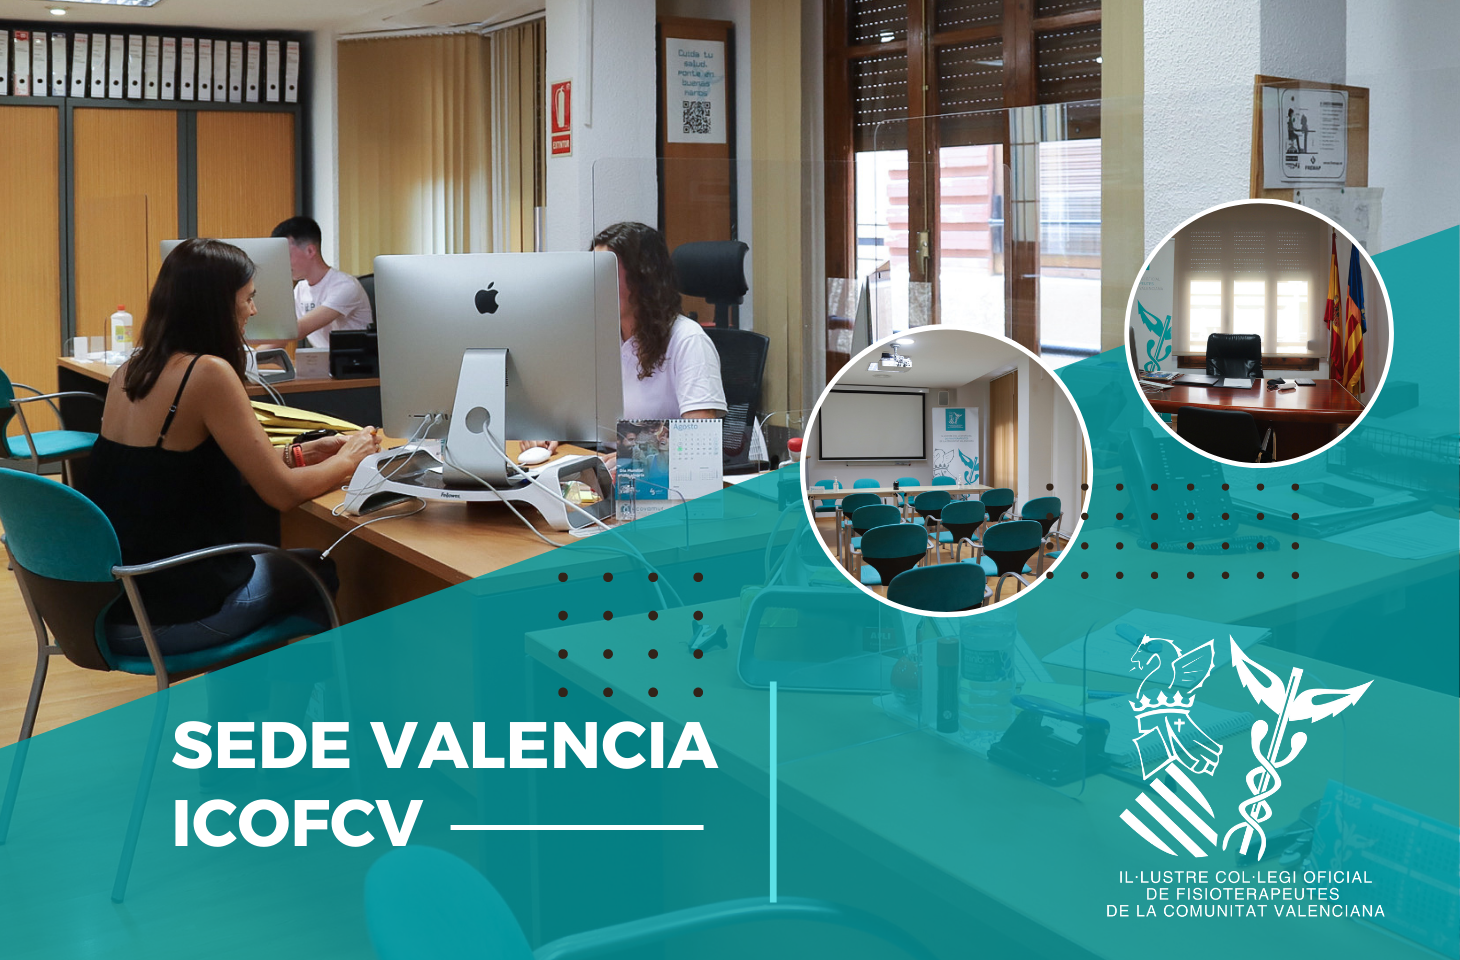 El ICOFCV cancela el préstamo hipotecario de la sede de Valencia